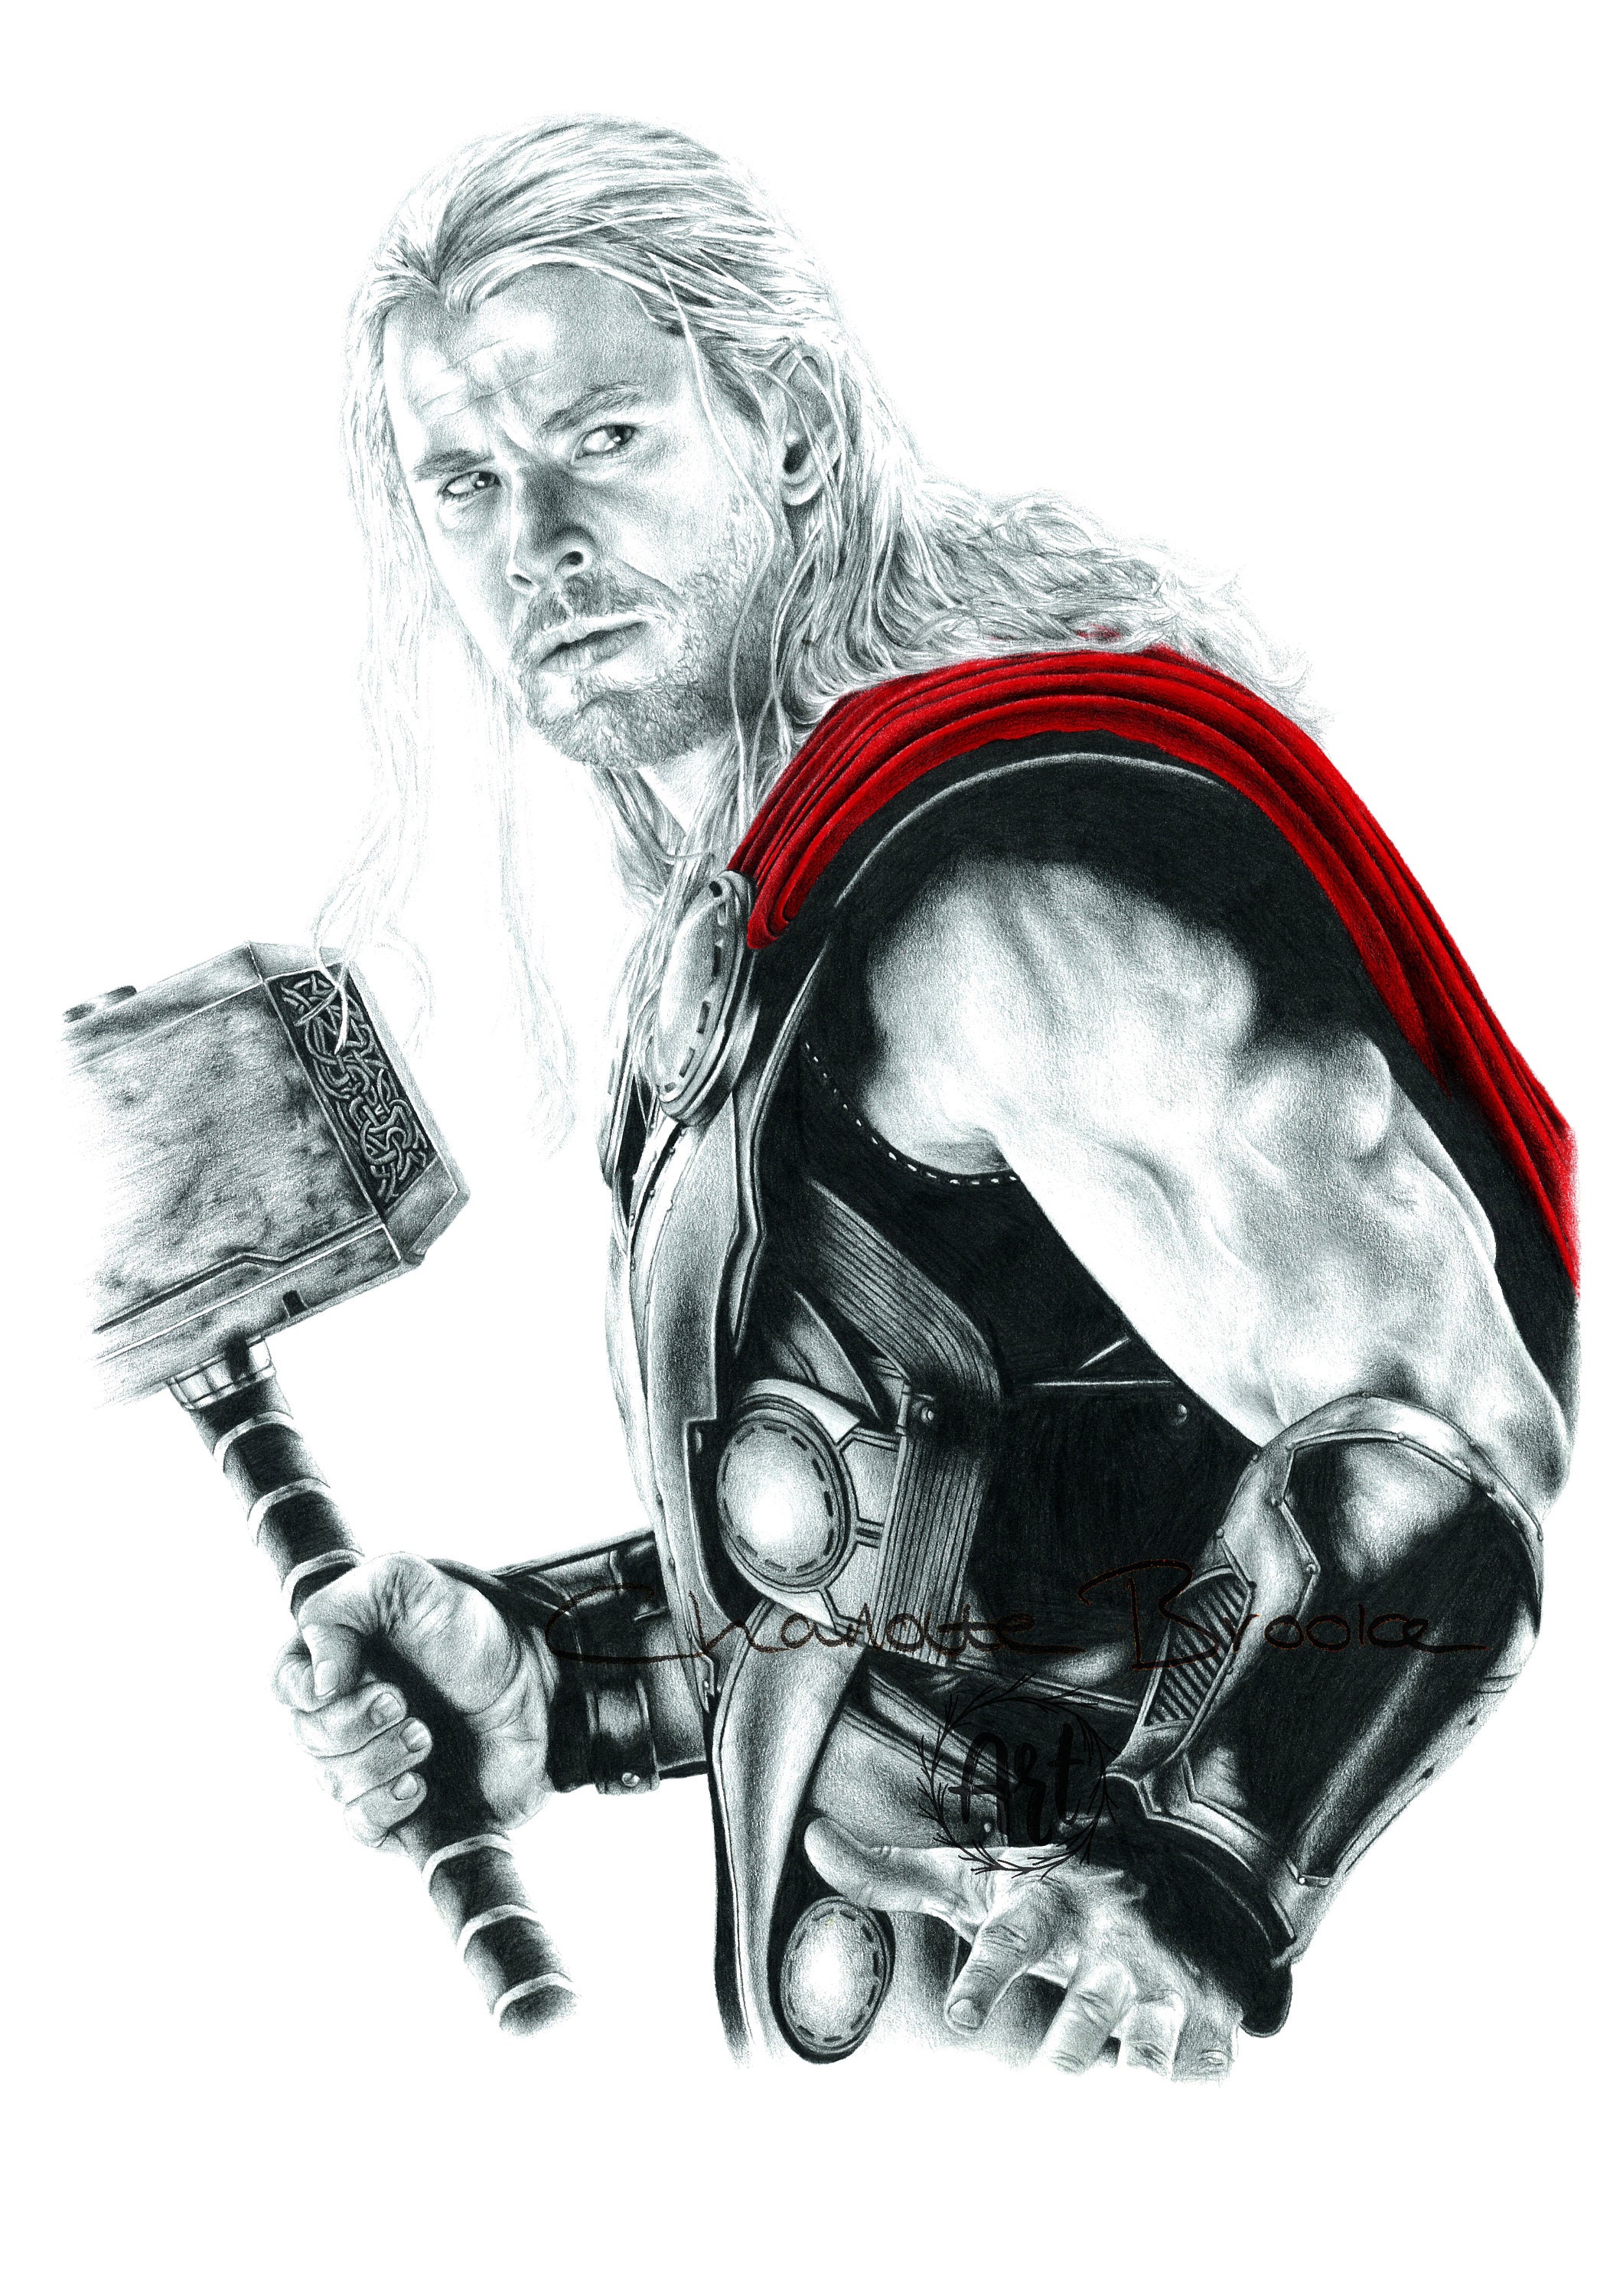 90 Thors Hammer Illustrations RoyaltyFree Vector Graphics  Clip Art   iStock  Thor hammer Mjolnir Viking